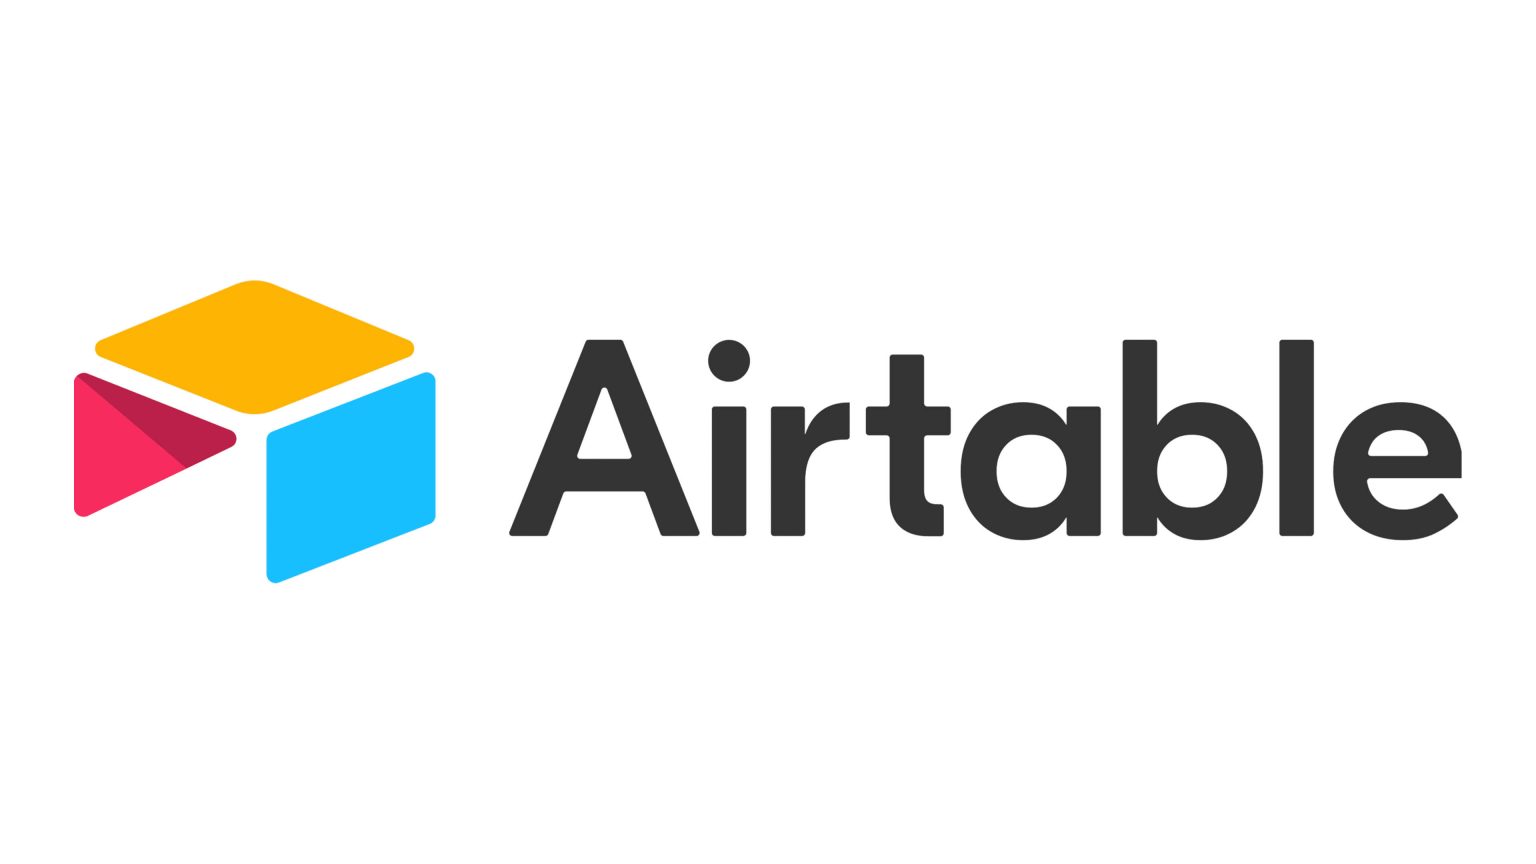 airtable logo vector